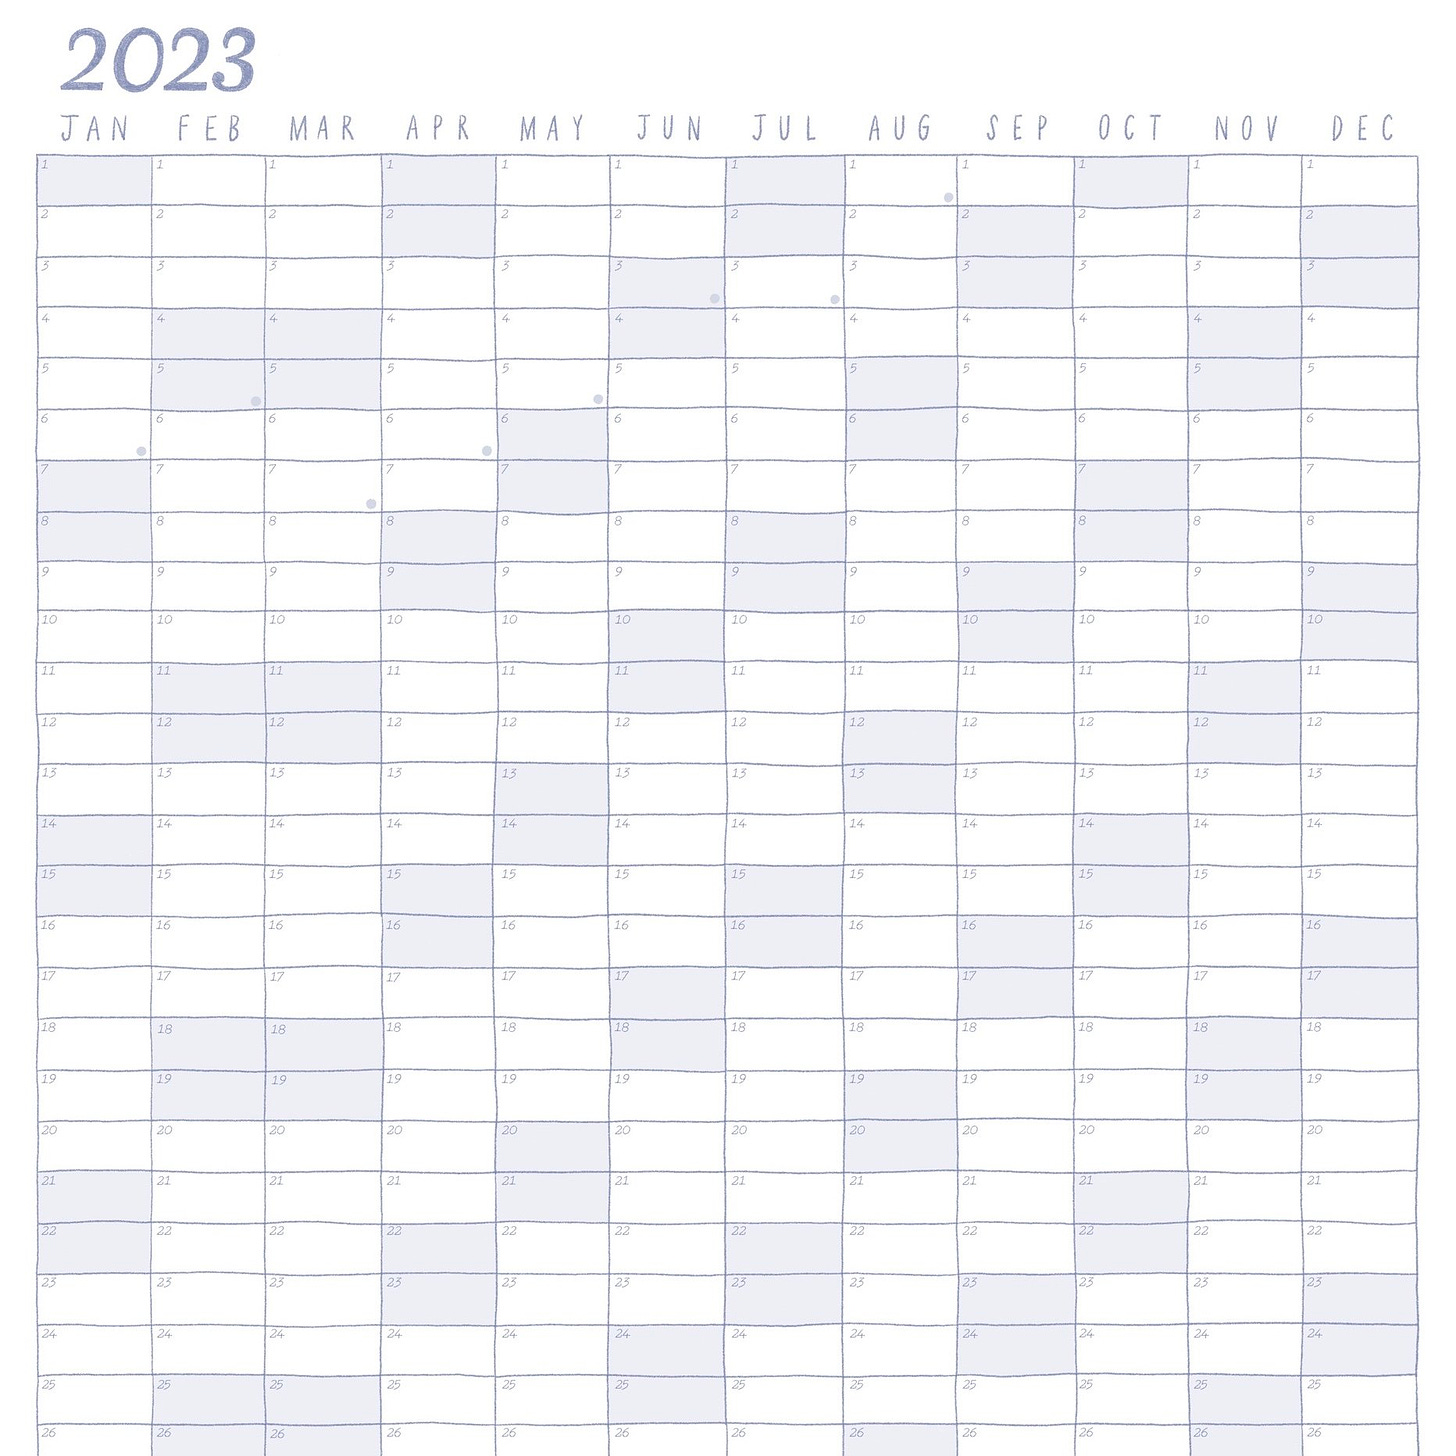 A wall calendar by dangerlam